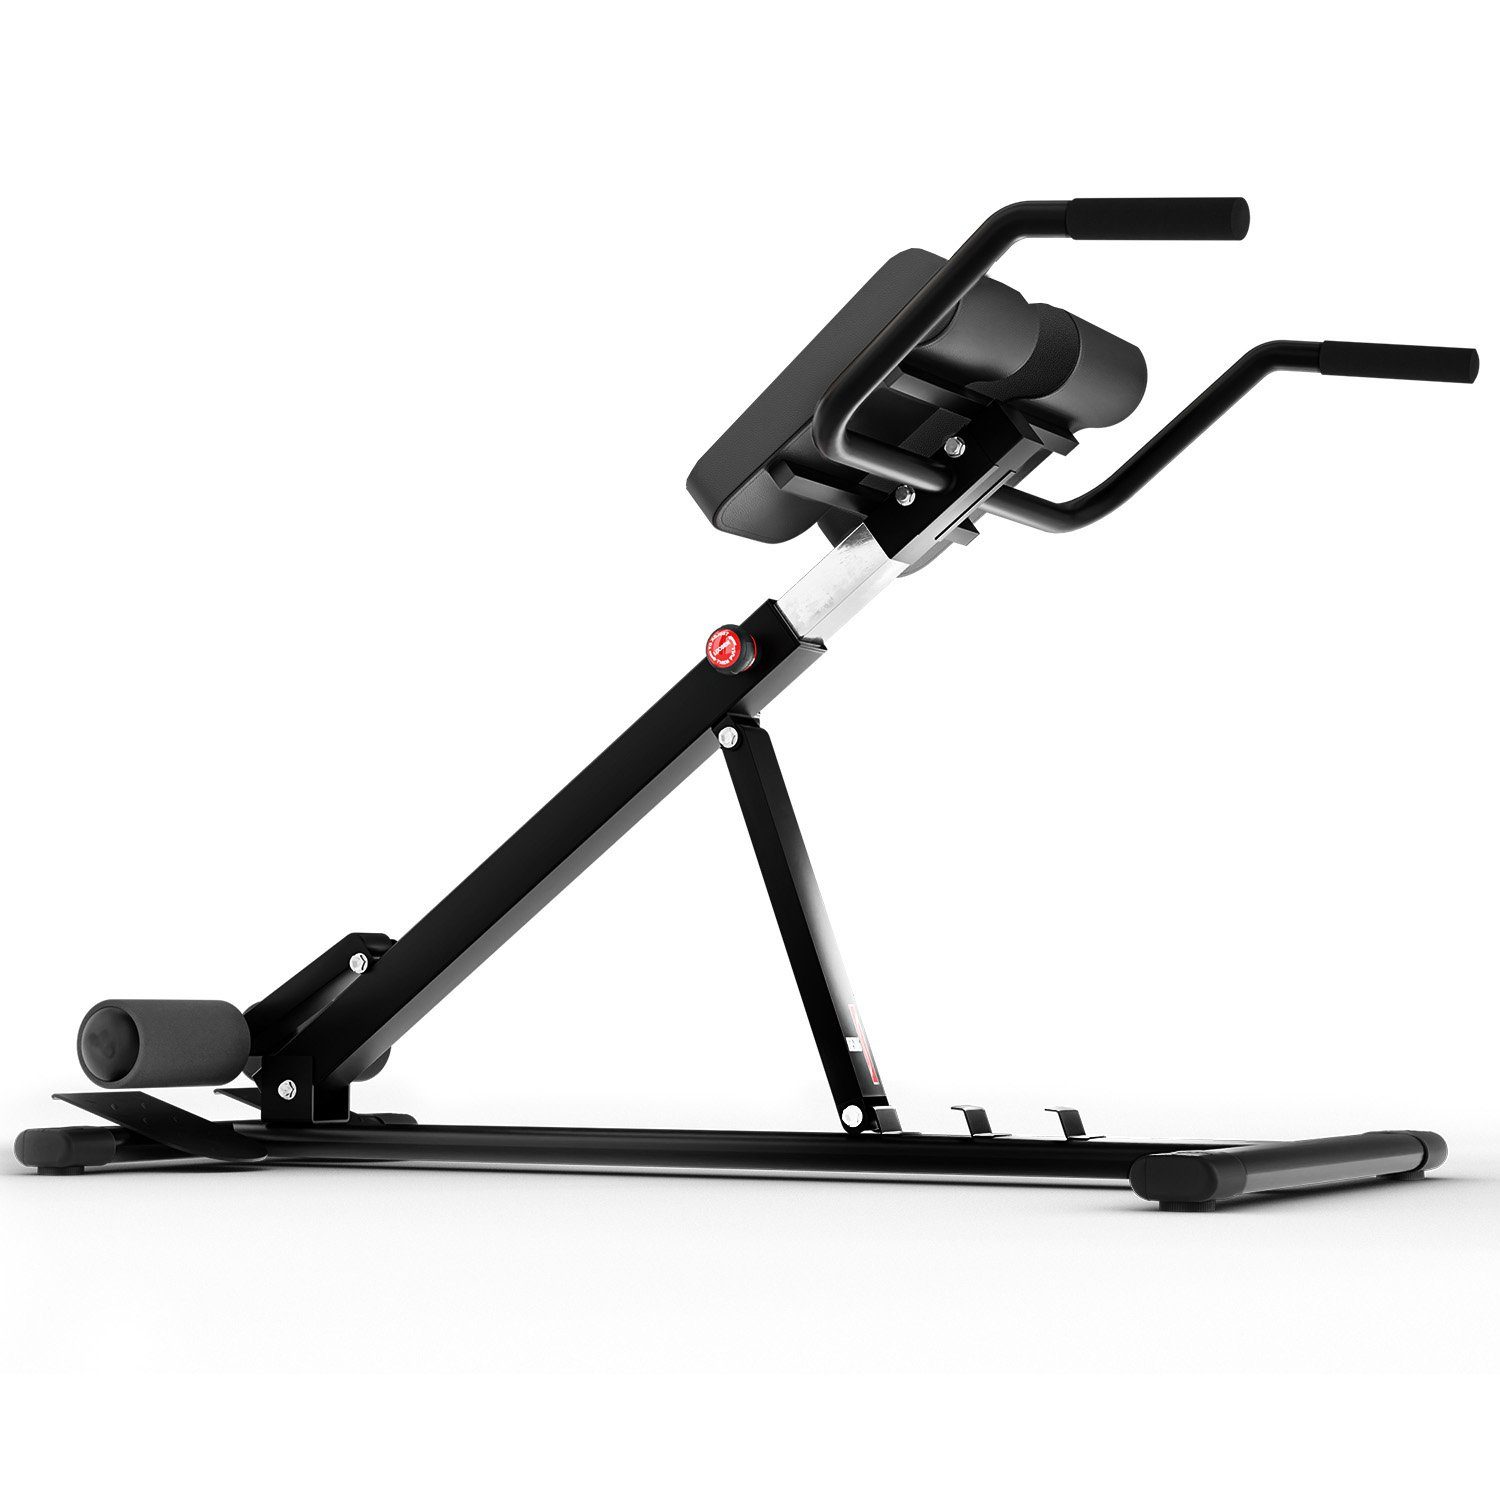 Rückentrainer ergonomisch, Technofit Home verstellbar Rückentrainer Gym Rückenstrecker Krafttraining Zuhause Bauch